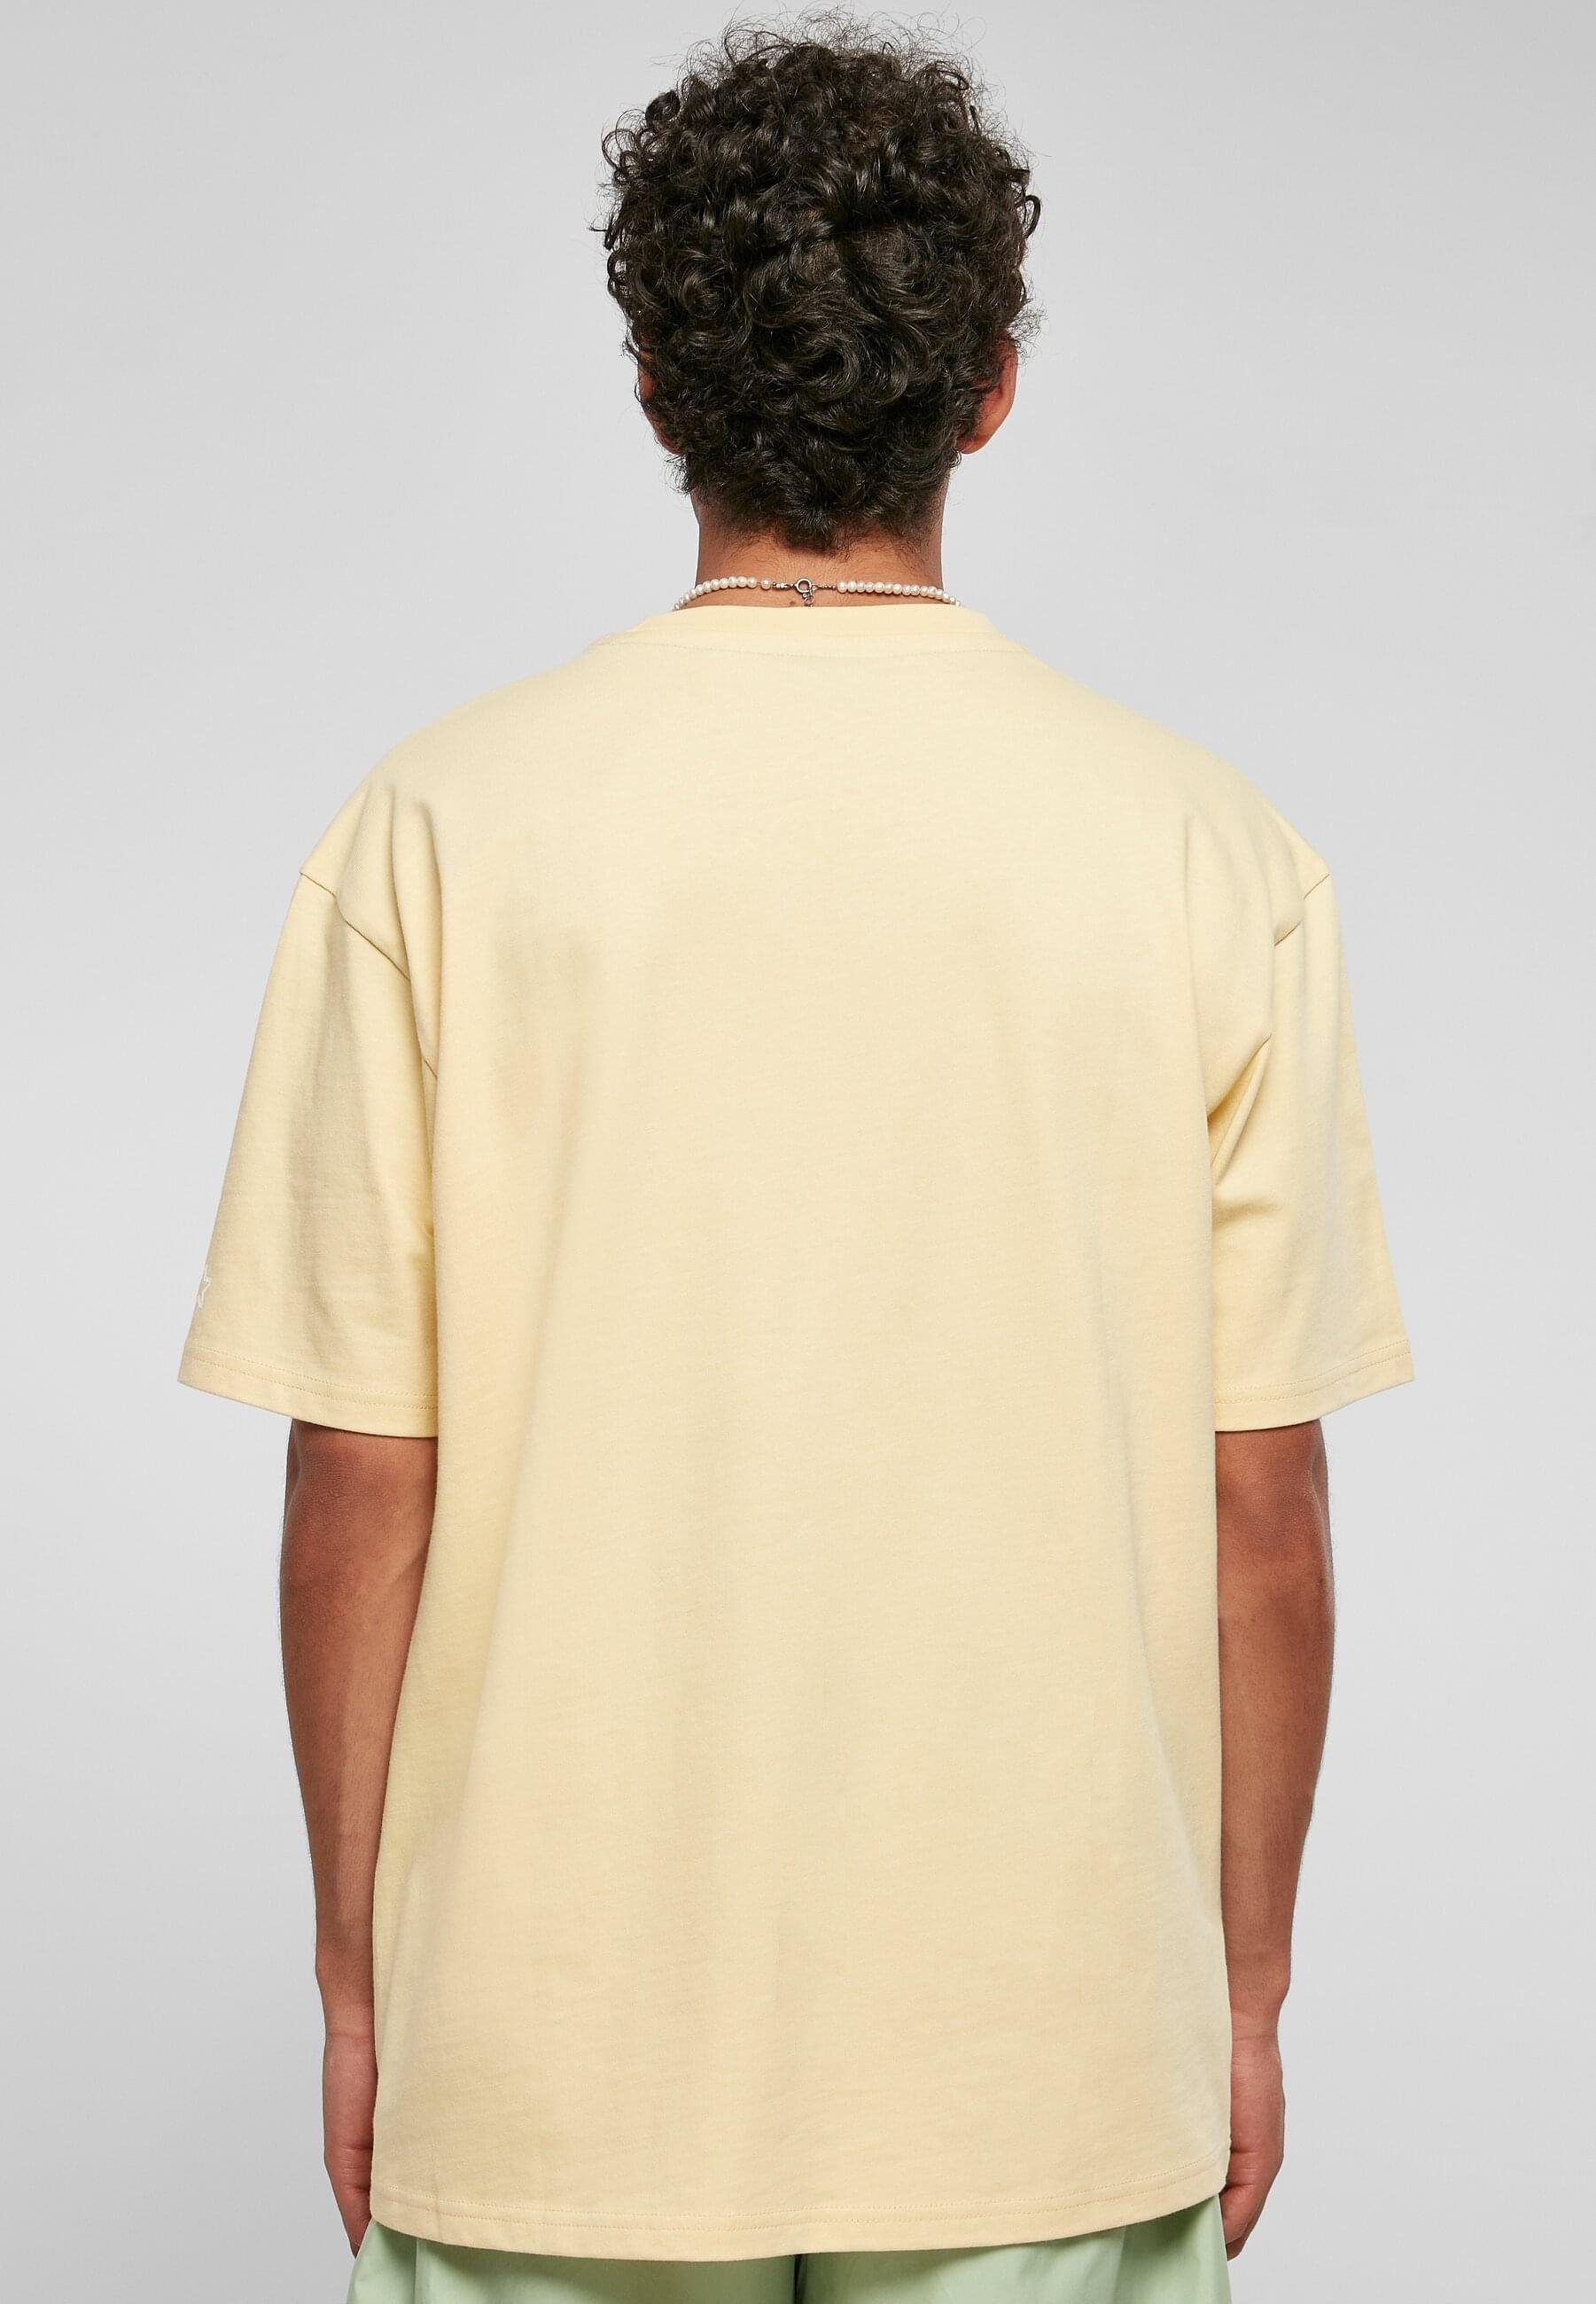 Herren (1-tlg) Palm T-Shirt Starter Black Label Starter Tee lightyellow